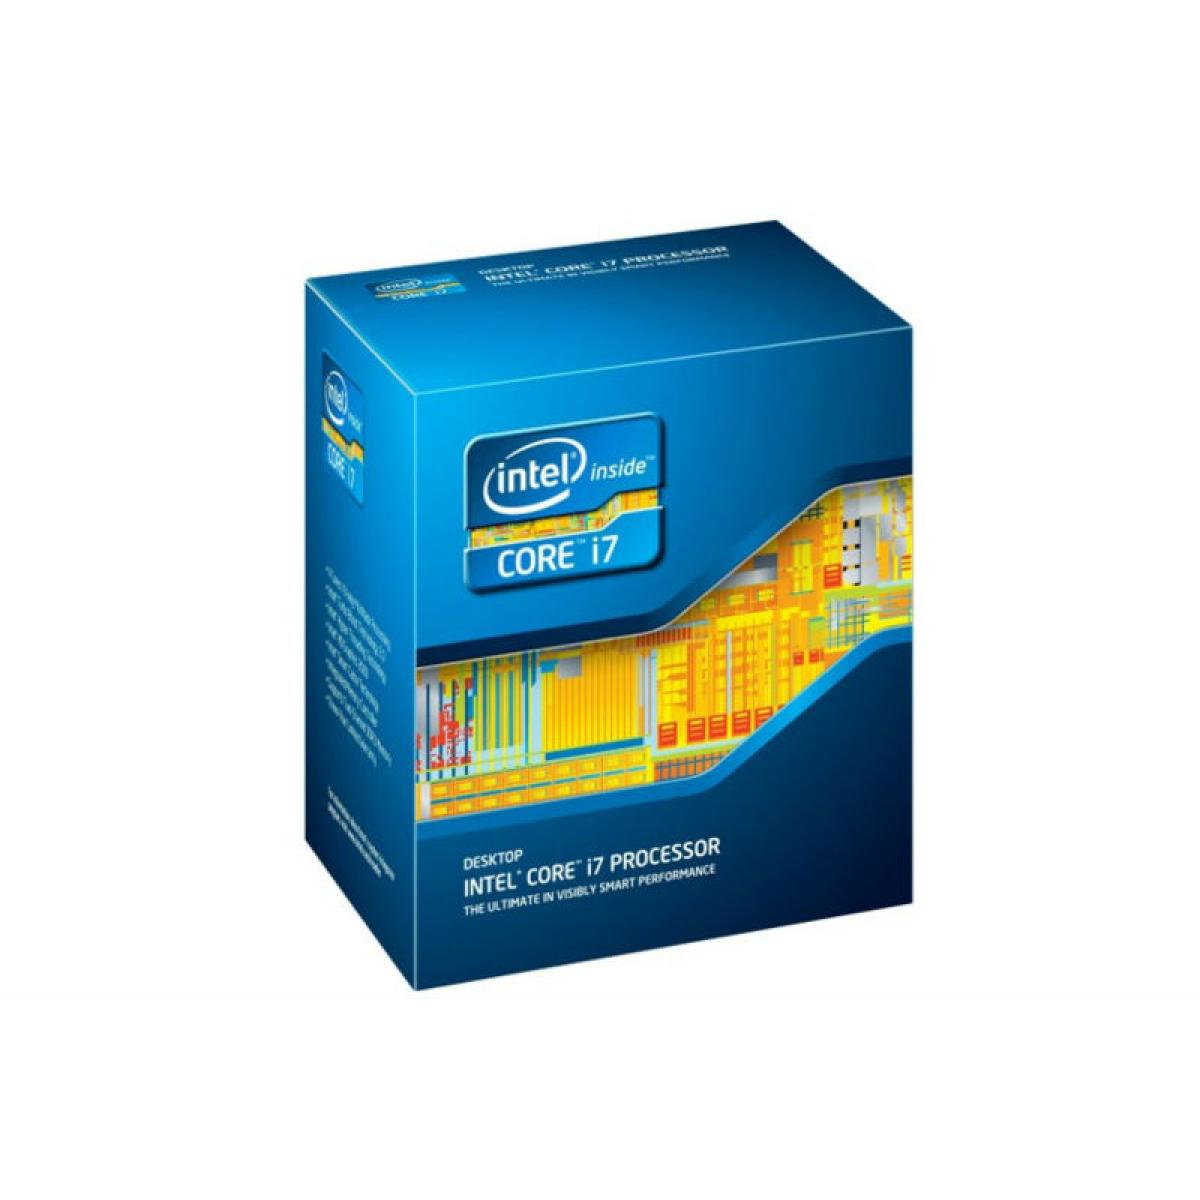 Intel Core i7 Processor i7-3770 | BX80637I73770 | City Center For